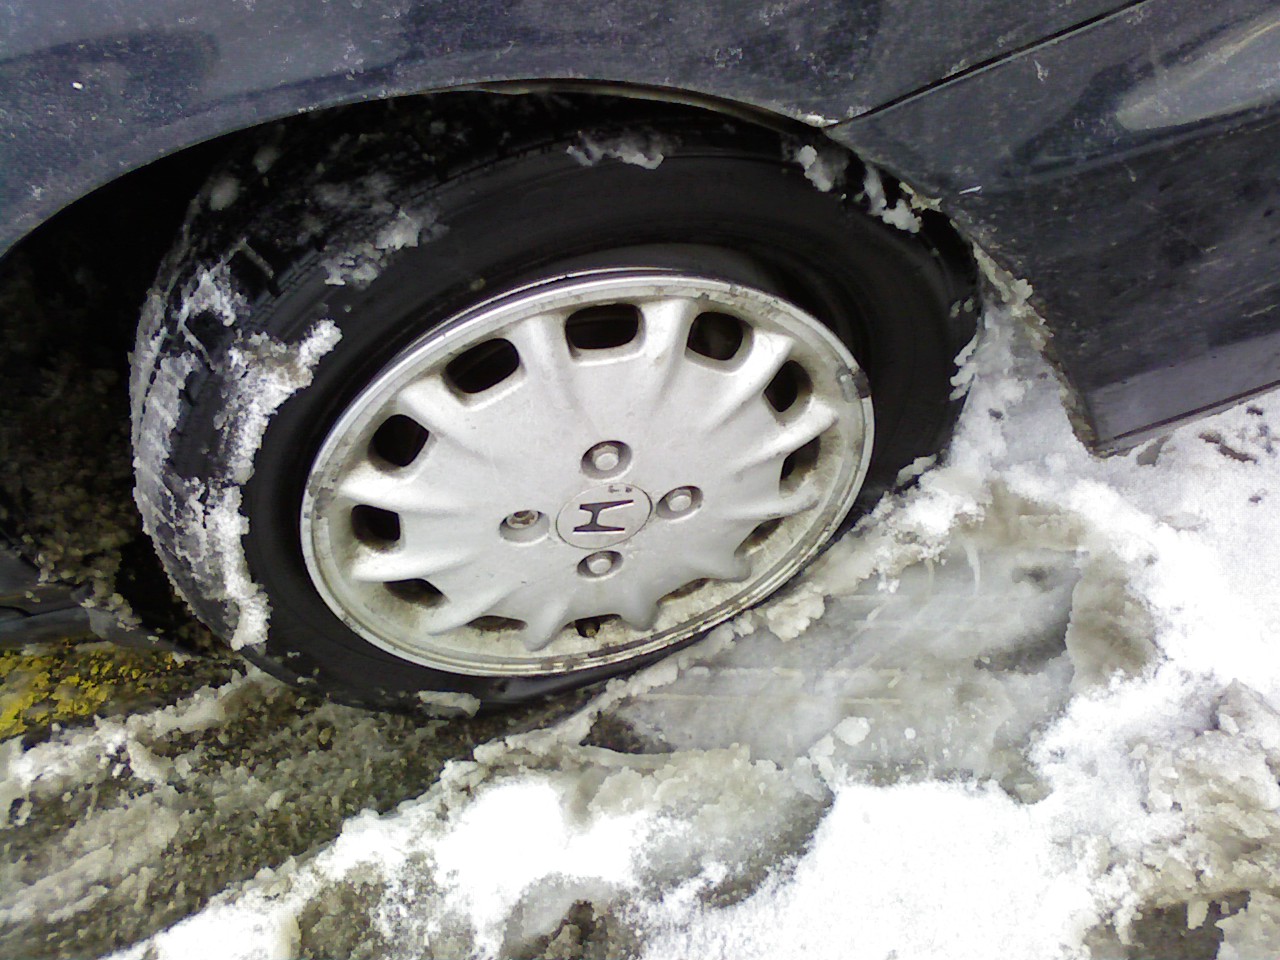 Pothole tire